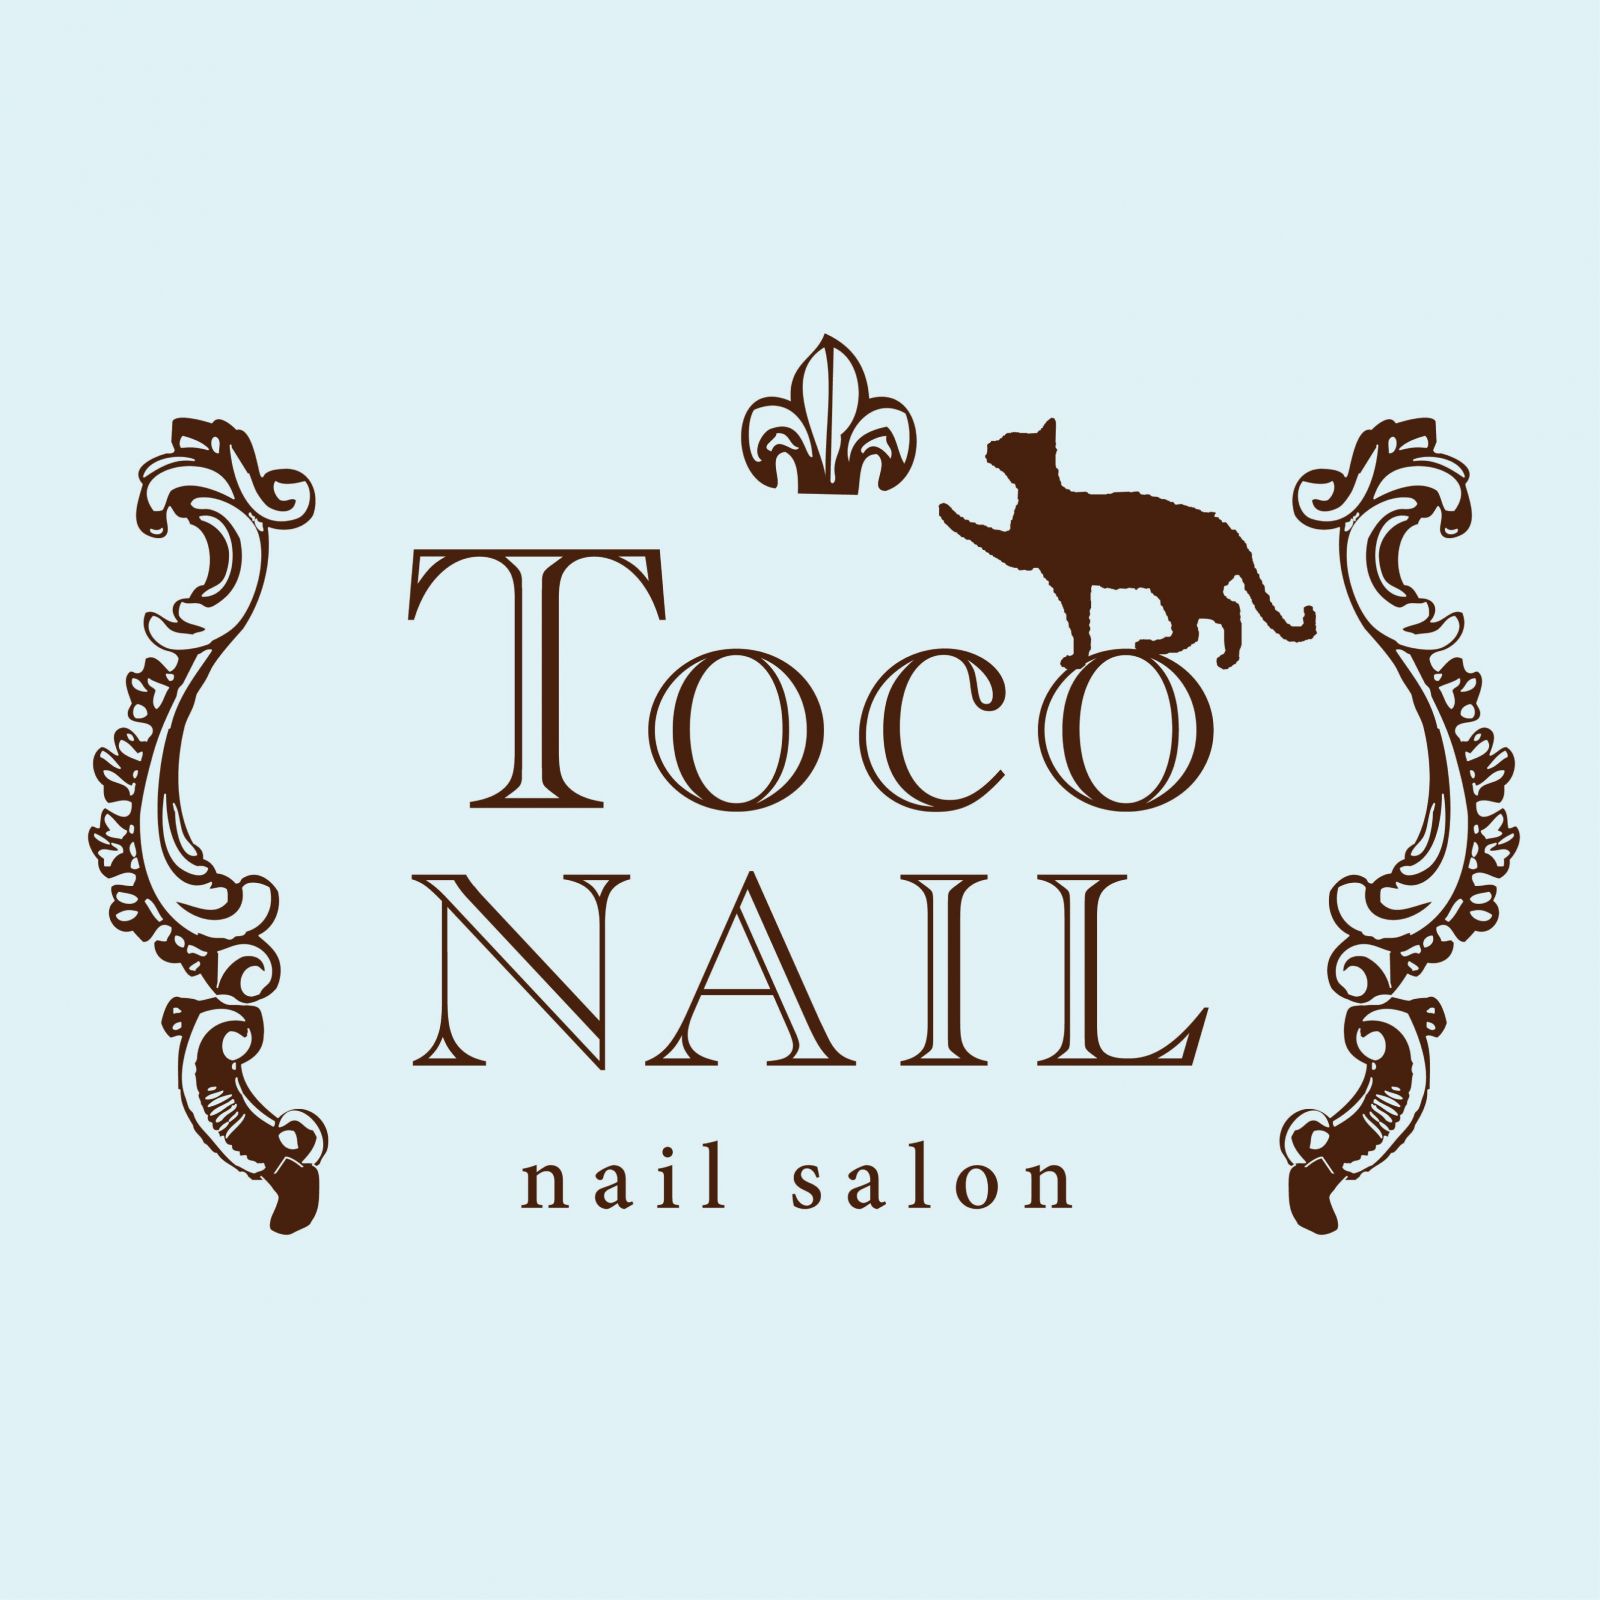 nail salon Toco NAIL